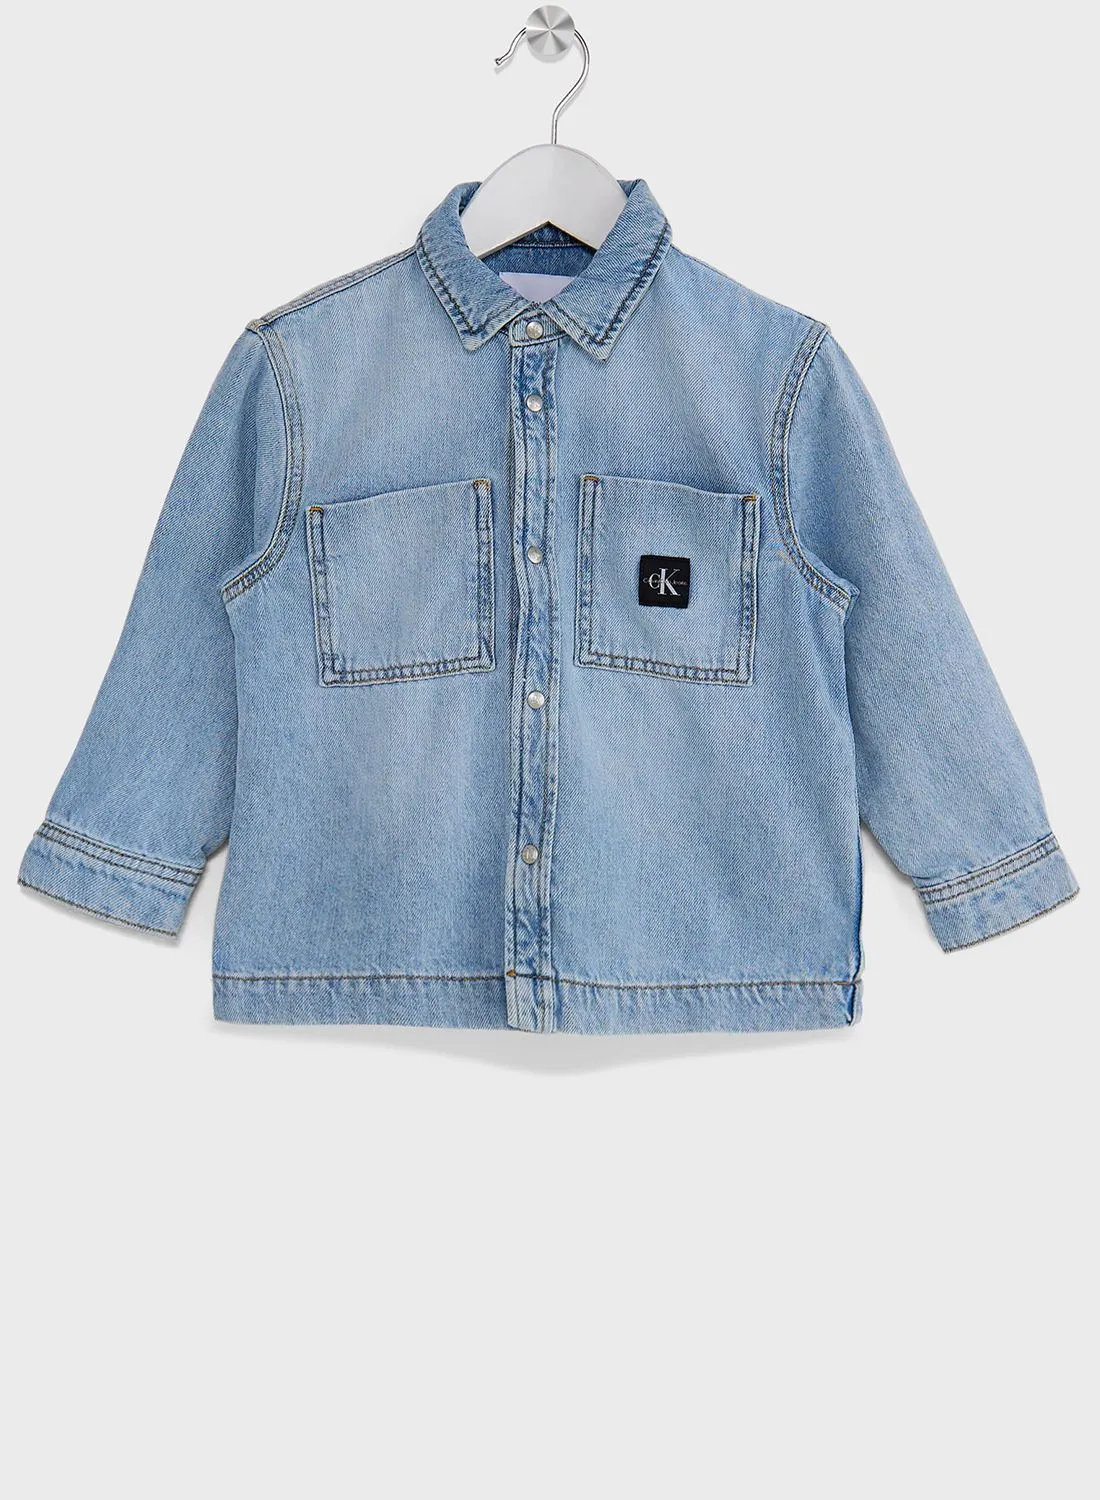 Calvin Klein Jeans Kids Light Wash Denim Jacket